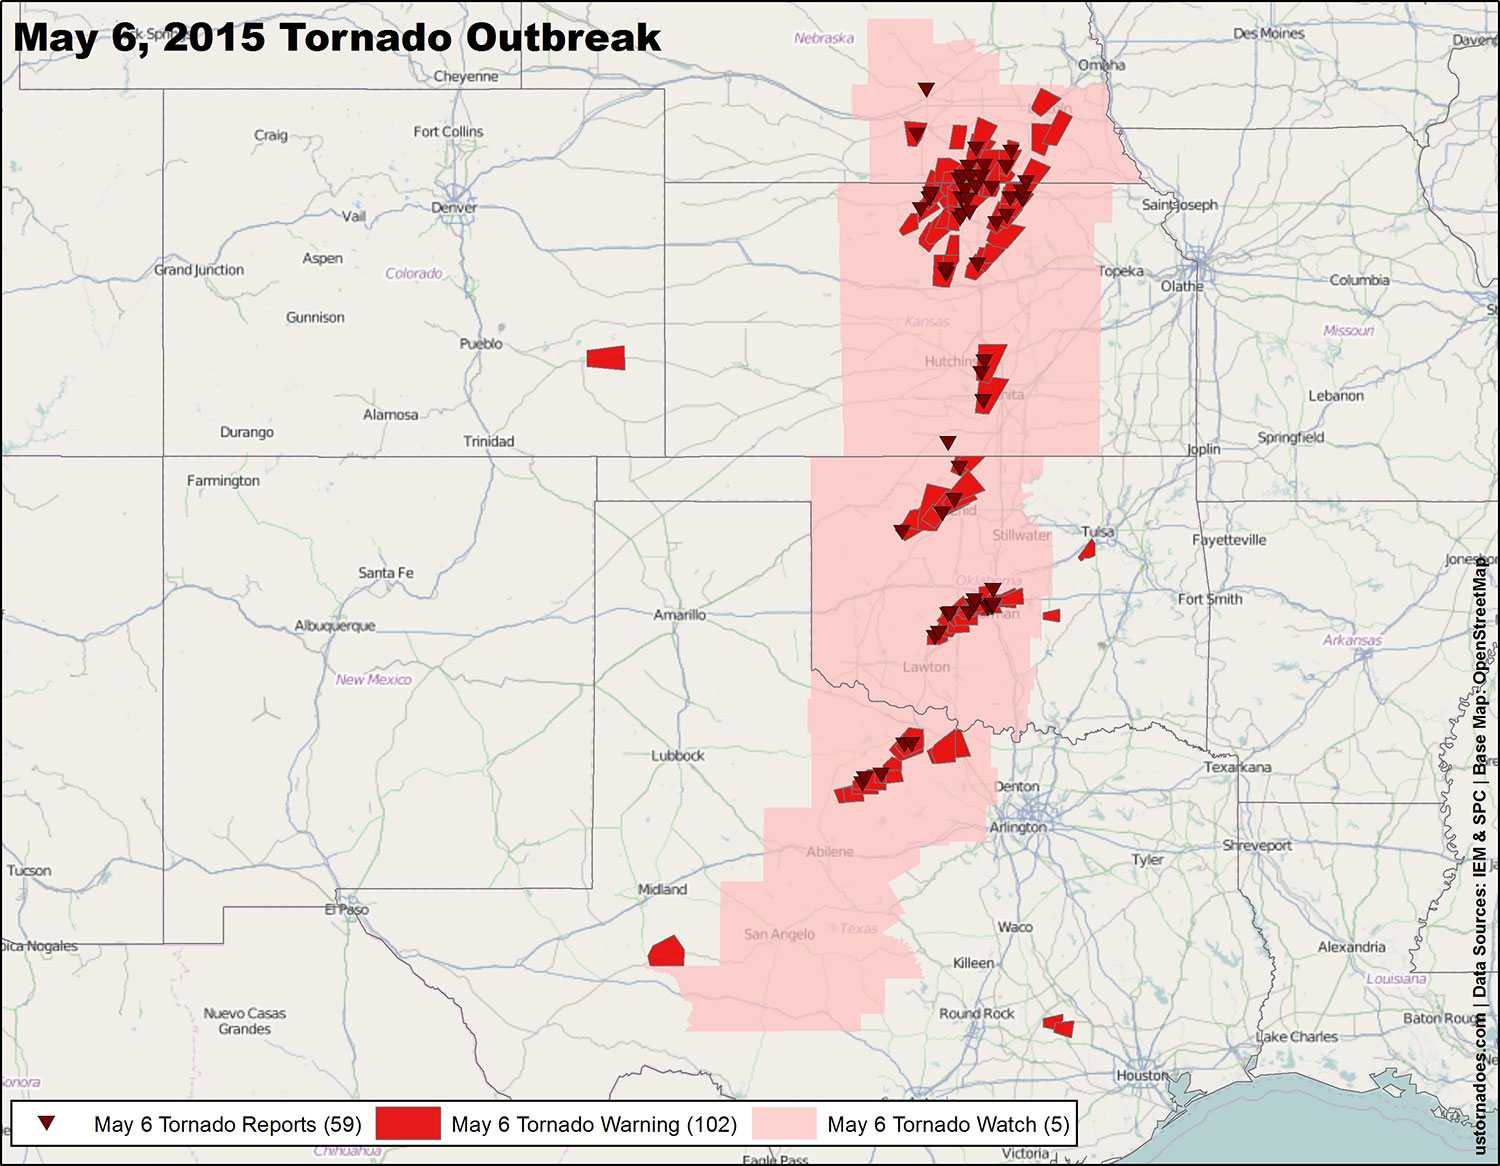 The largest tornado outbreaks of 2015 - U.S. Tornadoes